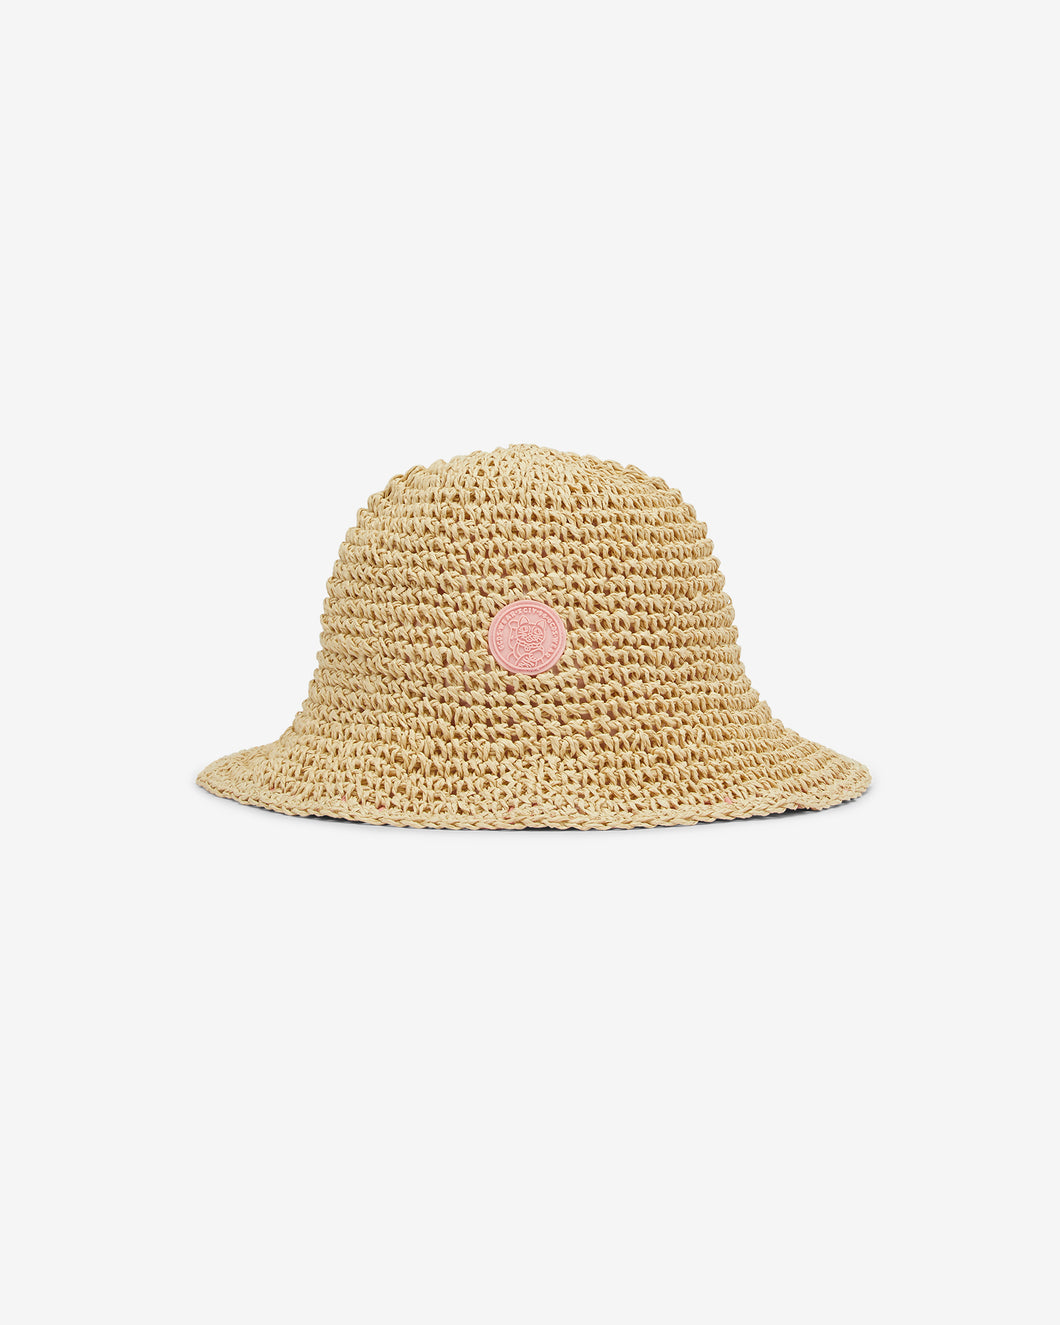 Junior Gcds Straw Cloche Hat: Girl Hats Beige | GCDS Spring/Summer 2023